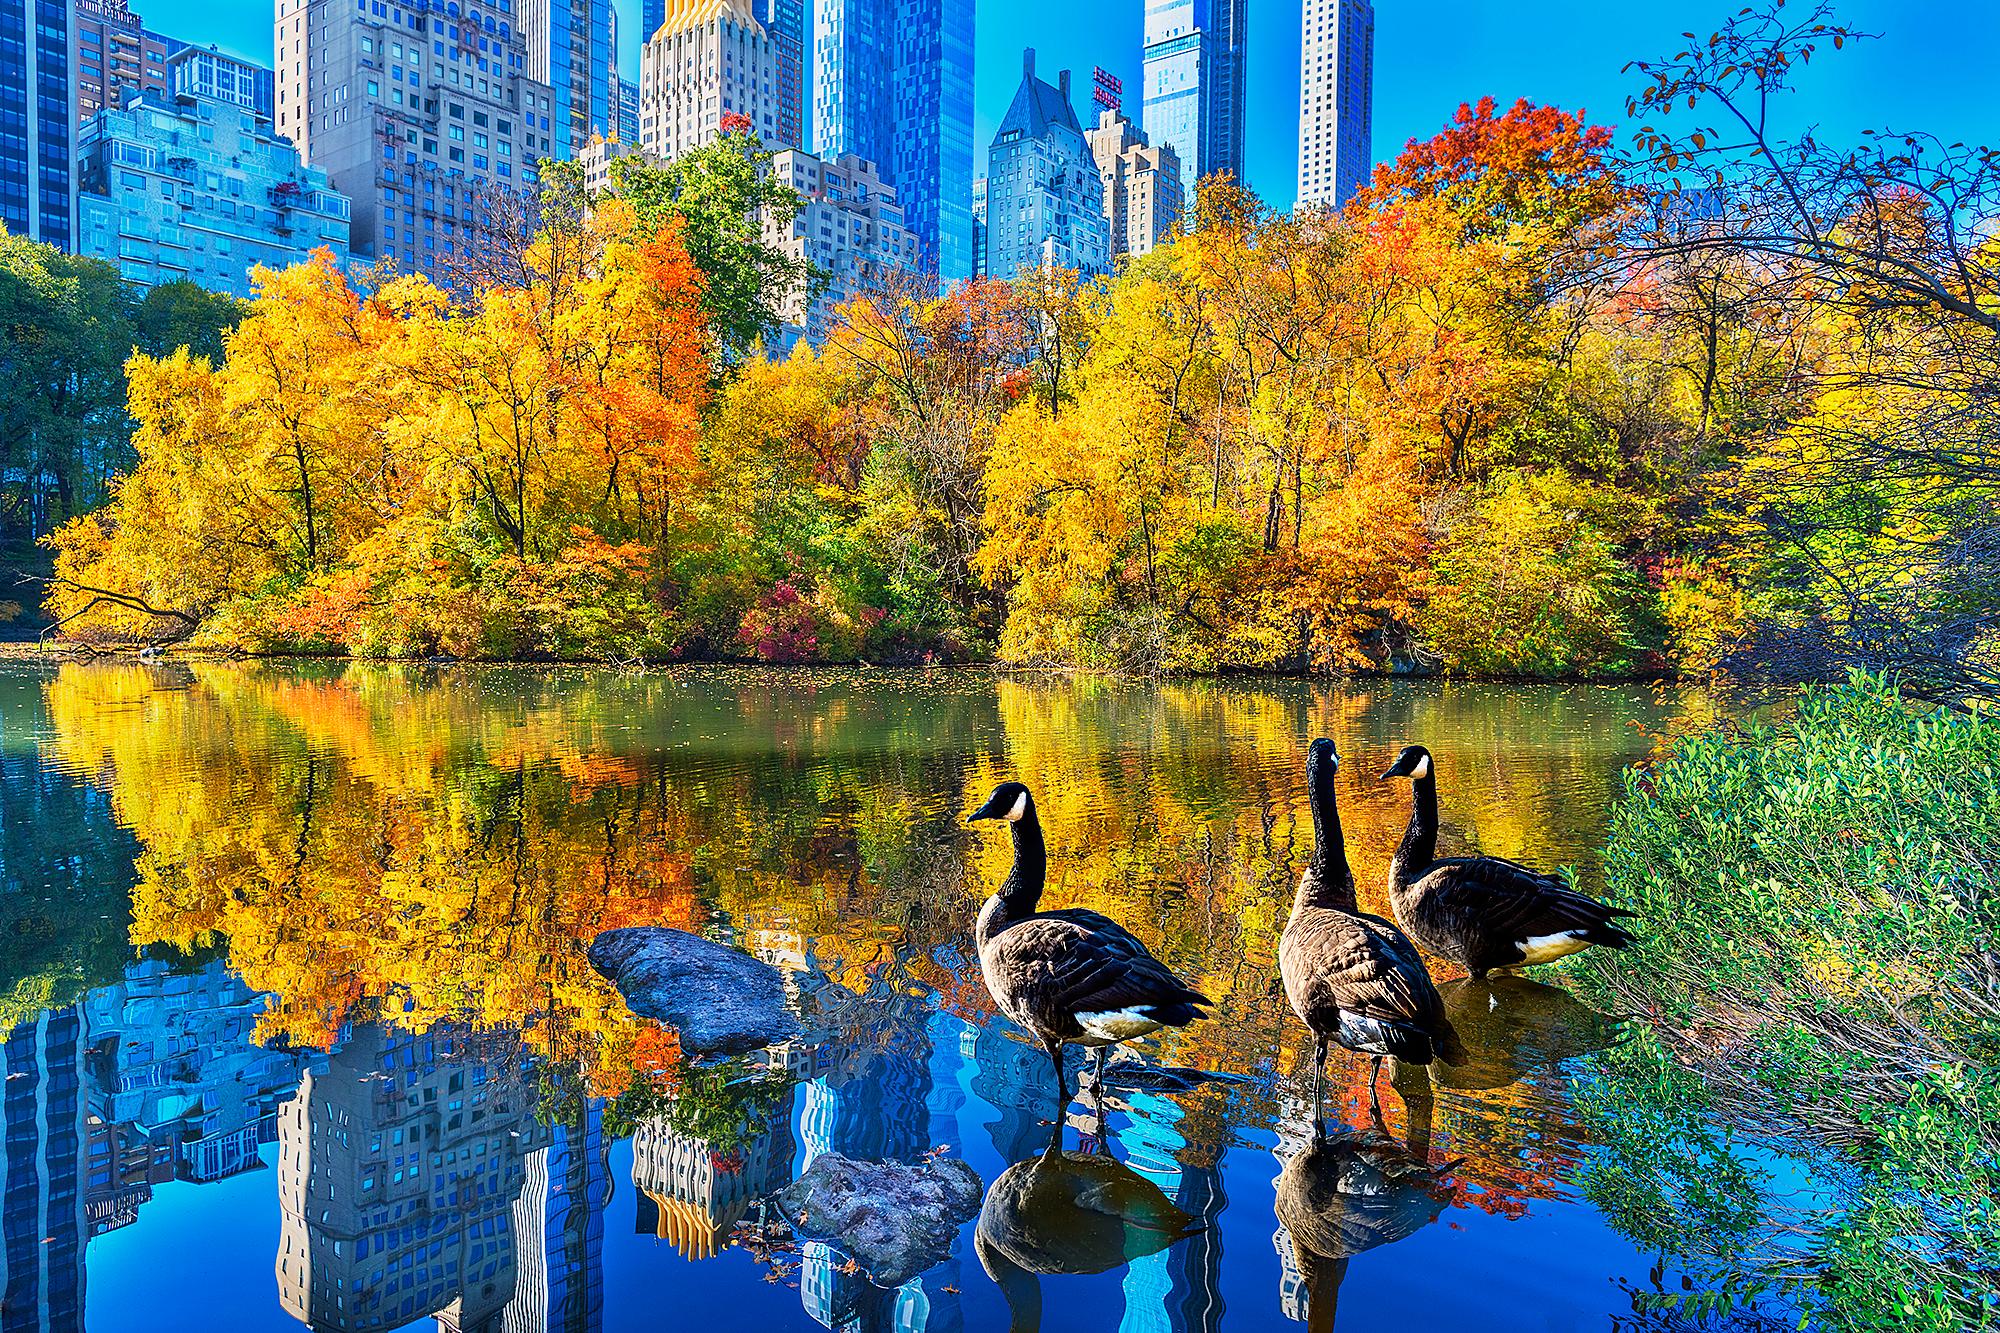 Ducks In Central Park Pond In Autumn